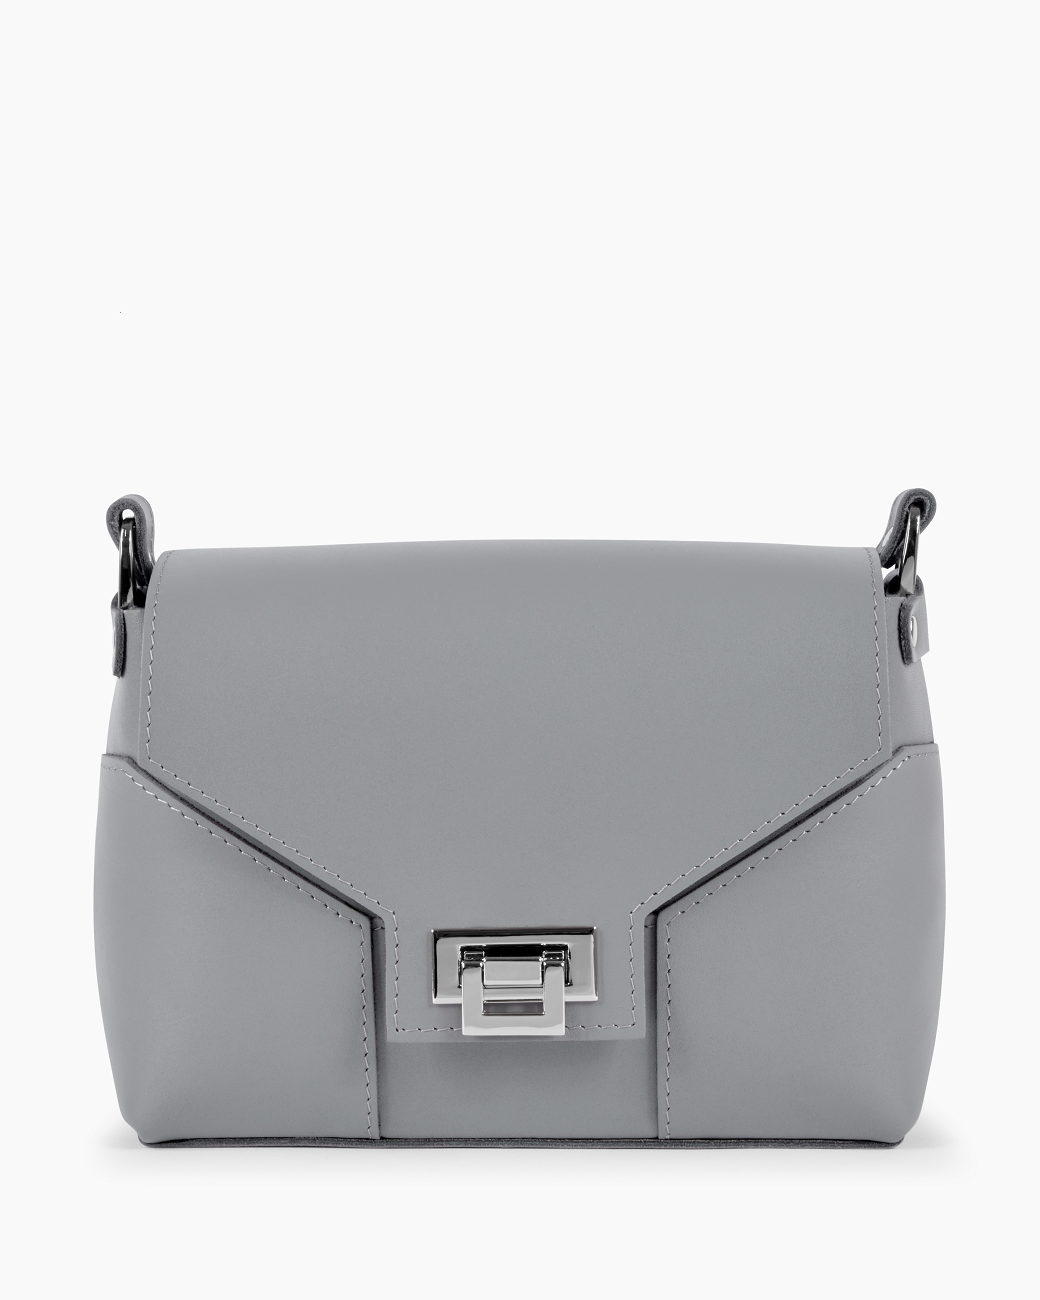 Женская сумка через плечо из натуральной кожи серая A011 grey